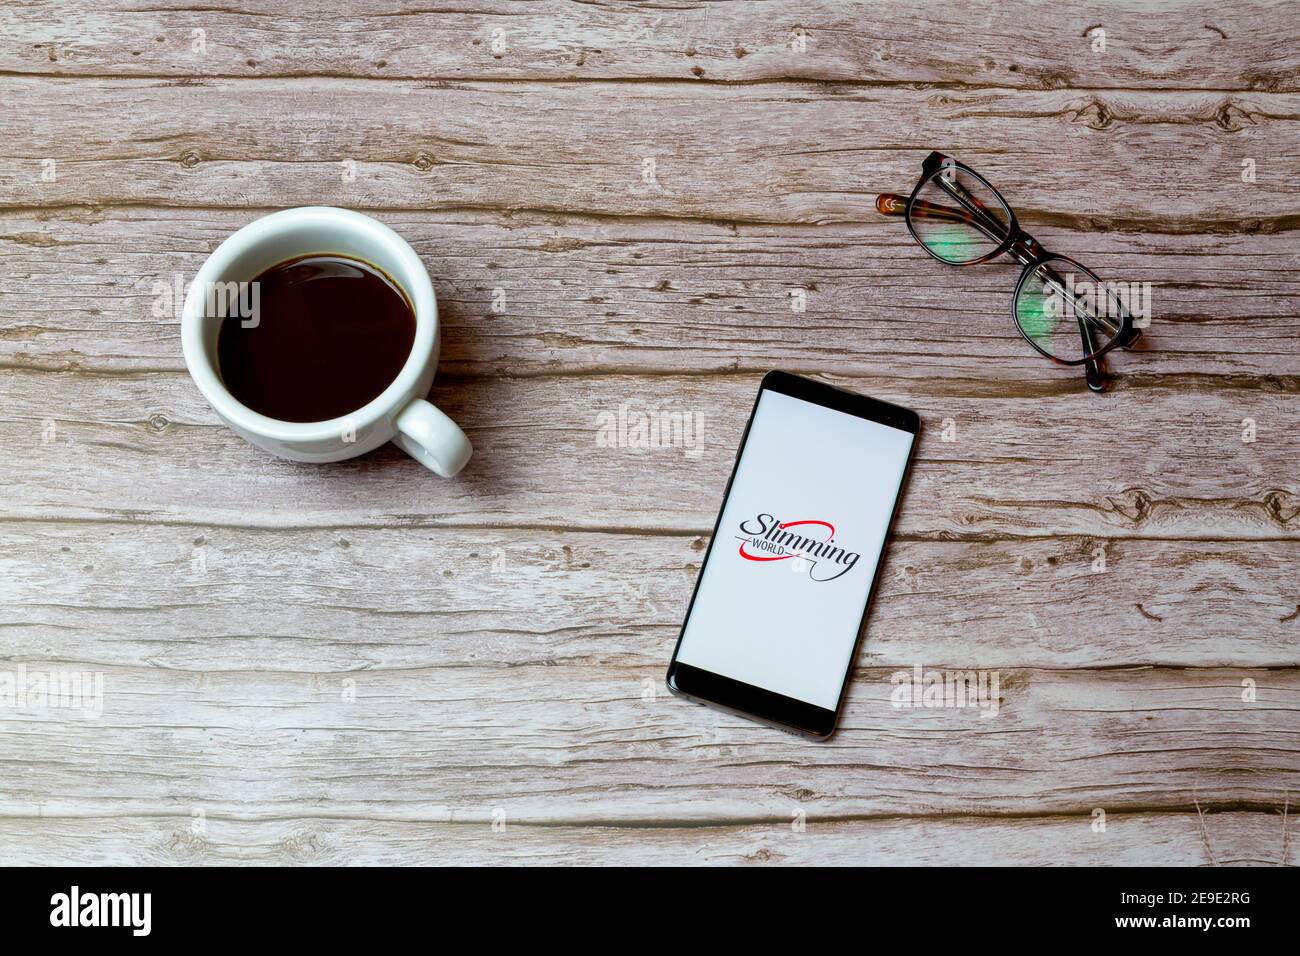 Ein Mobiltelefon oder Mobiltelefon auf einem Tisch Oder Schreibtisch mit der Slimming World App geöffnet und ein Kaffee daneben Stockfoto